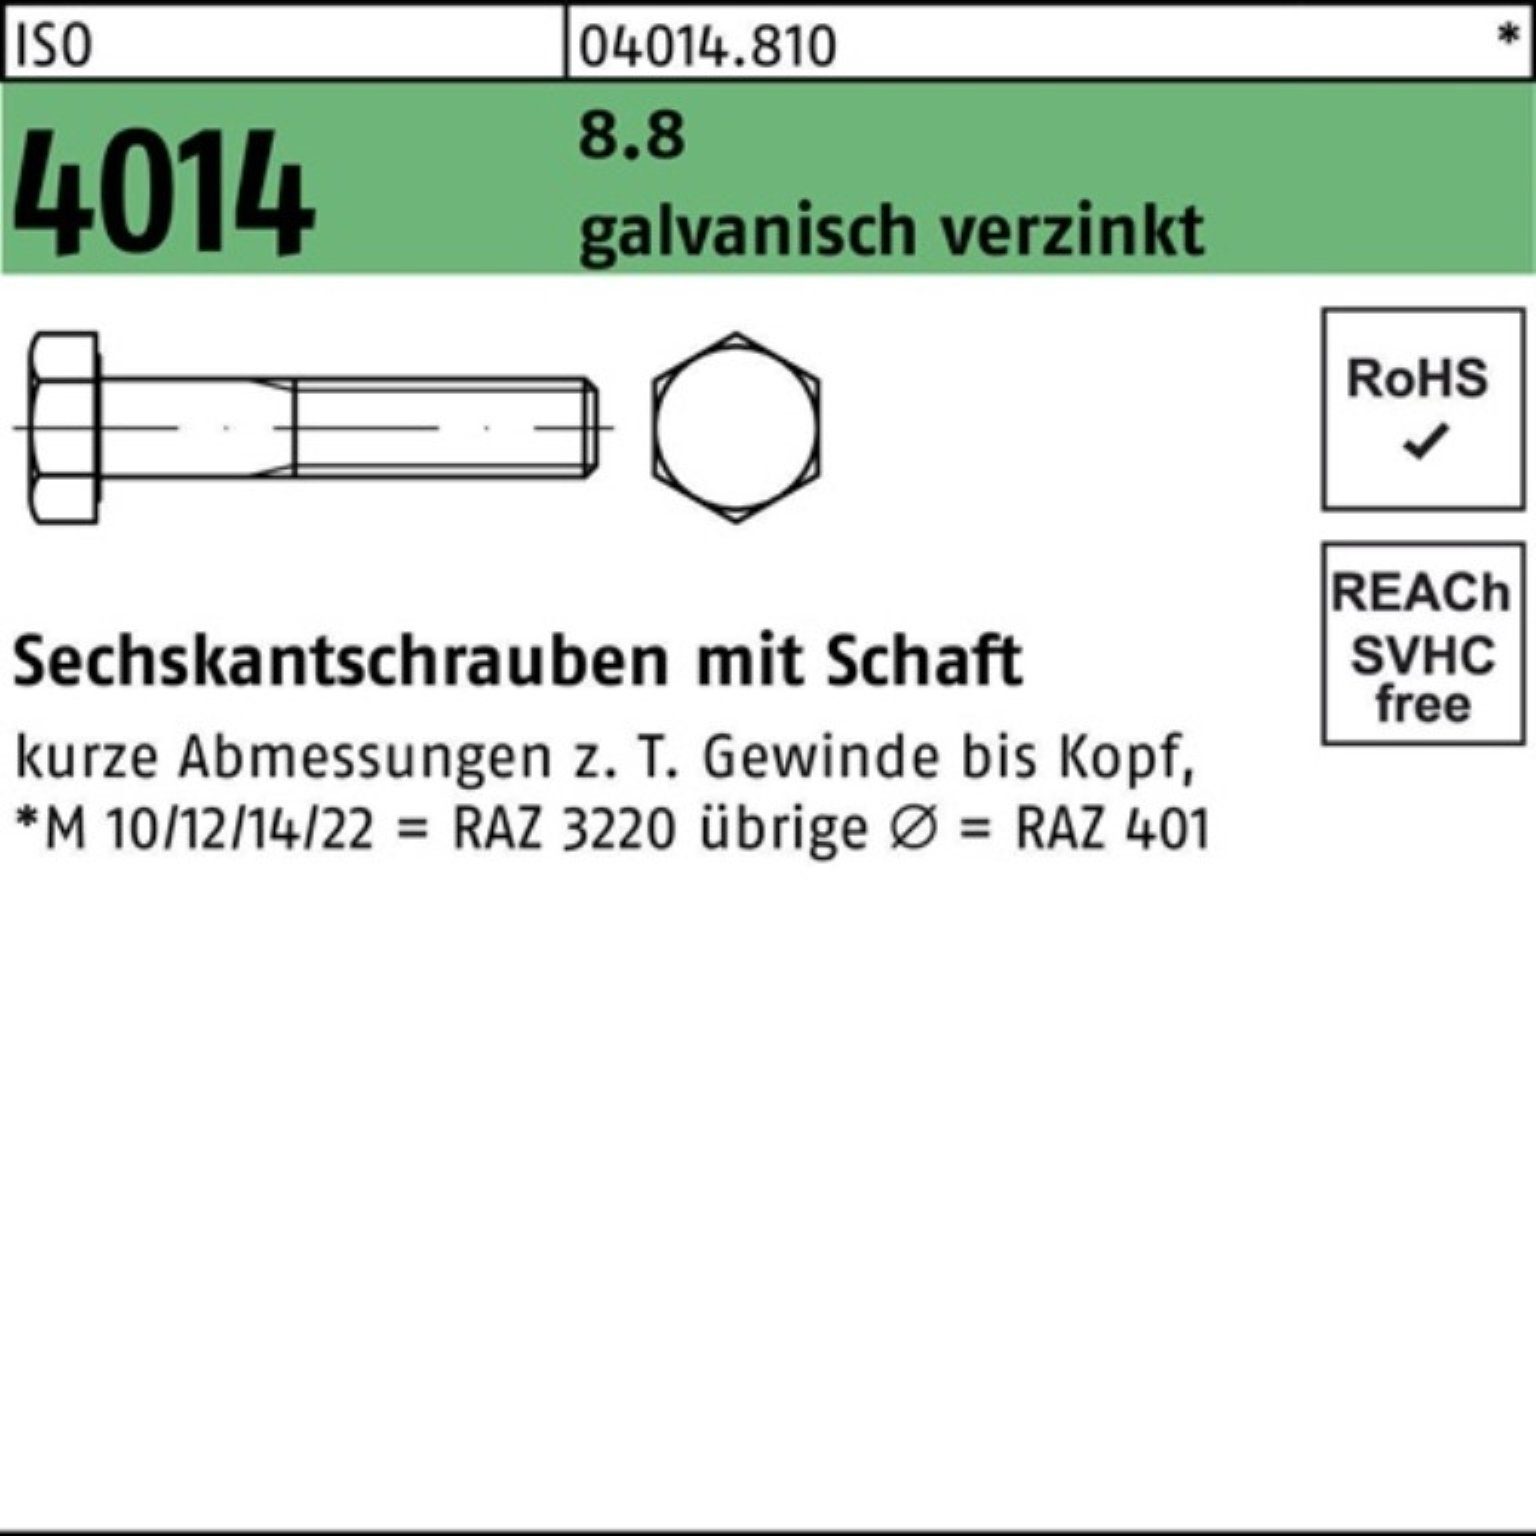 Sechskantschraube Sechskantschraube 2 8.8 Bufab ISO Schaft 300 100er galv.verz. M12x Pack 4014